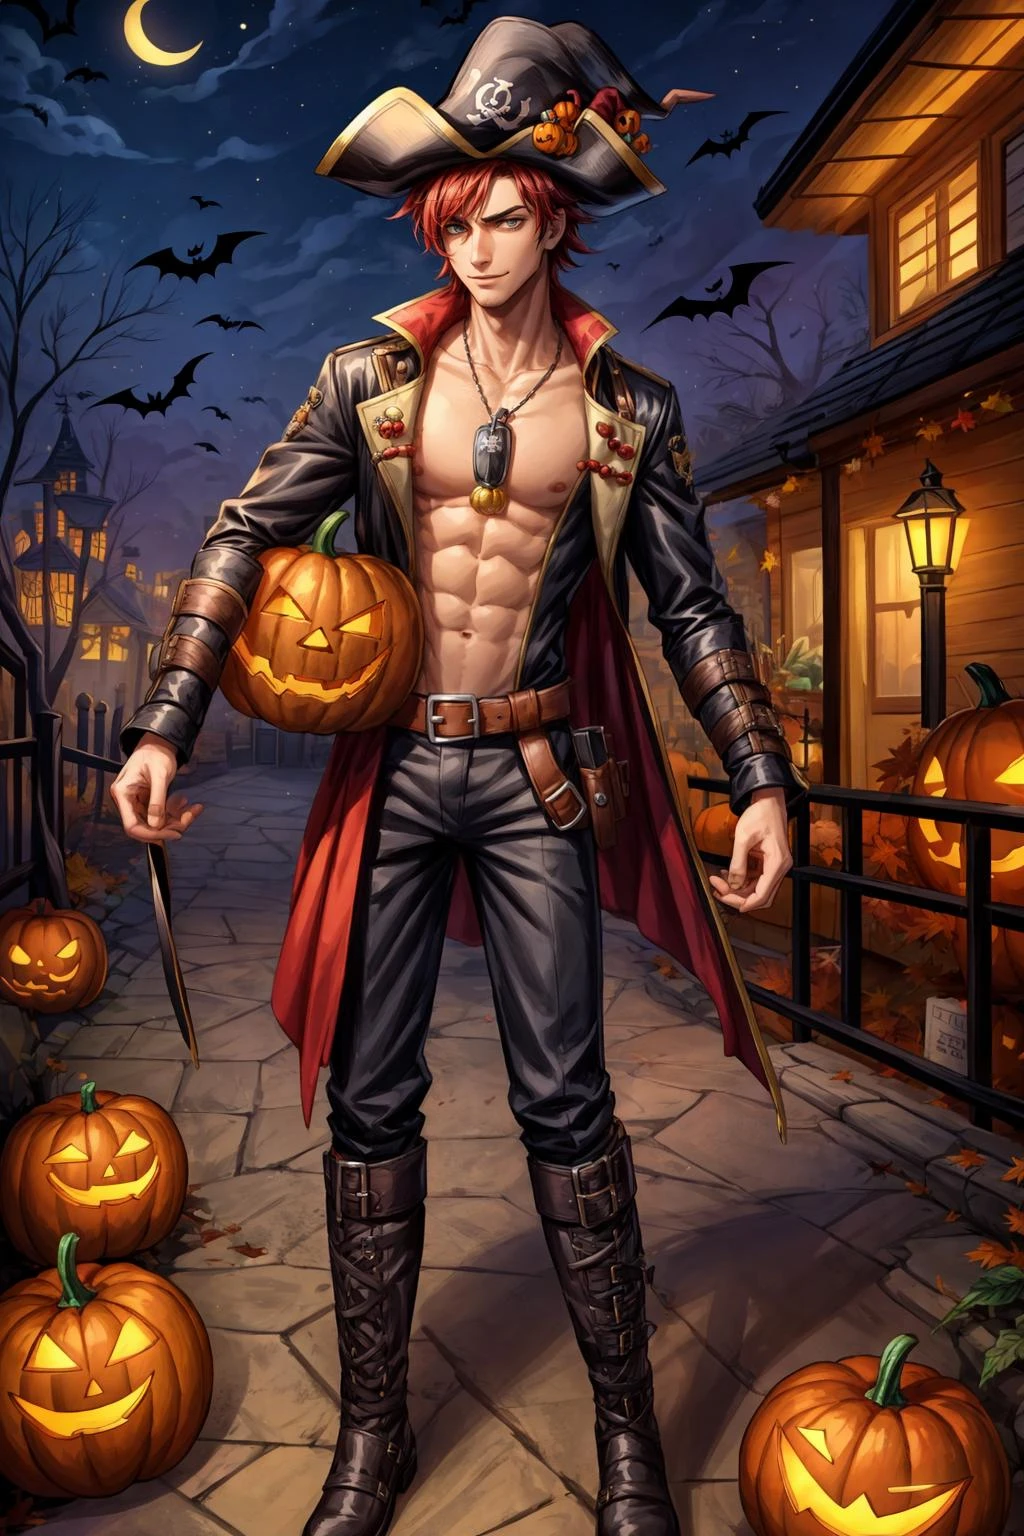 1garçon, un beau mec mince portant un costume de pirate à Halloween, a, bottes, poitrine exposée, quartier automnal à Halloween, de fête,